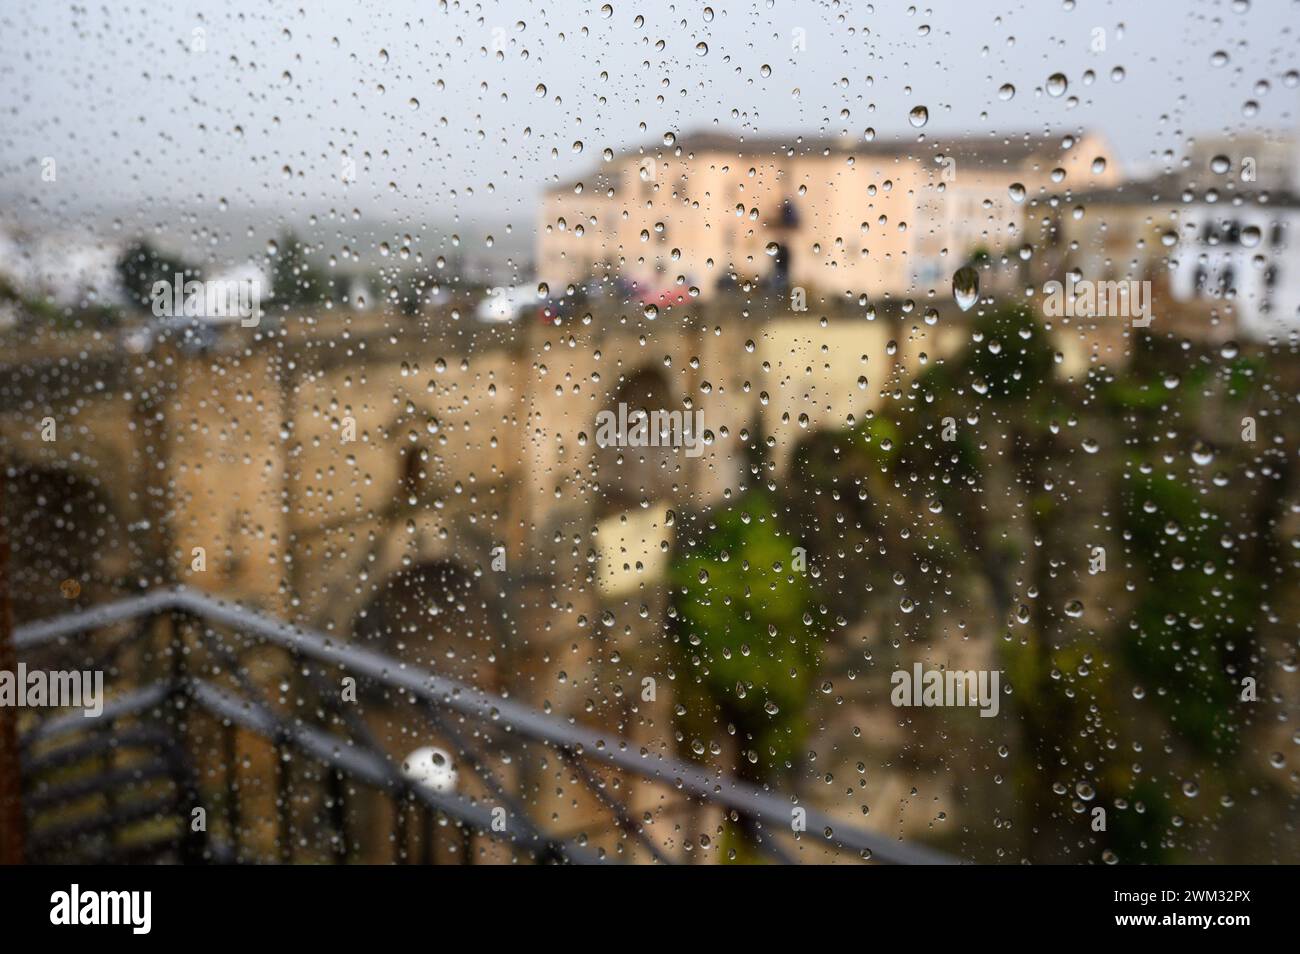 Vue sur le pont Nuevo de Ronda depuis la fenêtre de l'hôtel avec des gouttes de pluie sur le verre, Malaga, Andalousie, Espagne. Banque D'Images